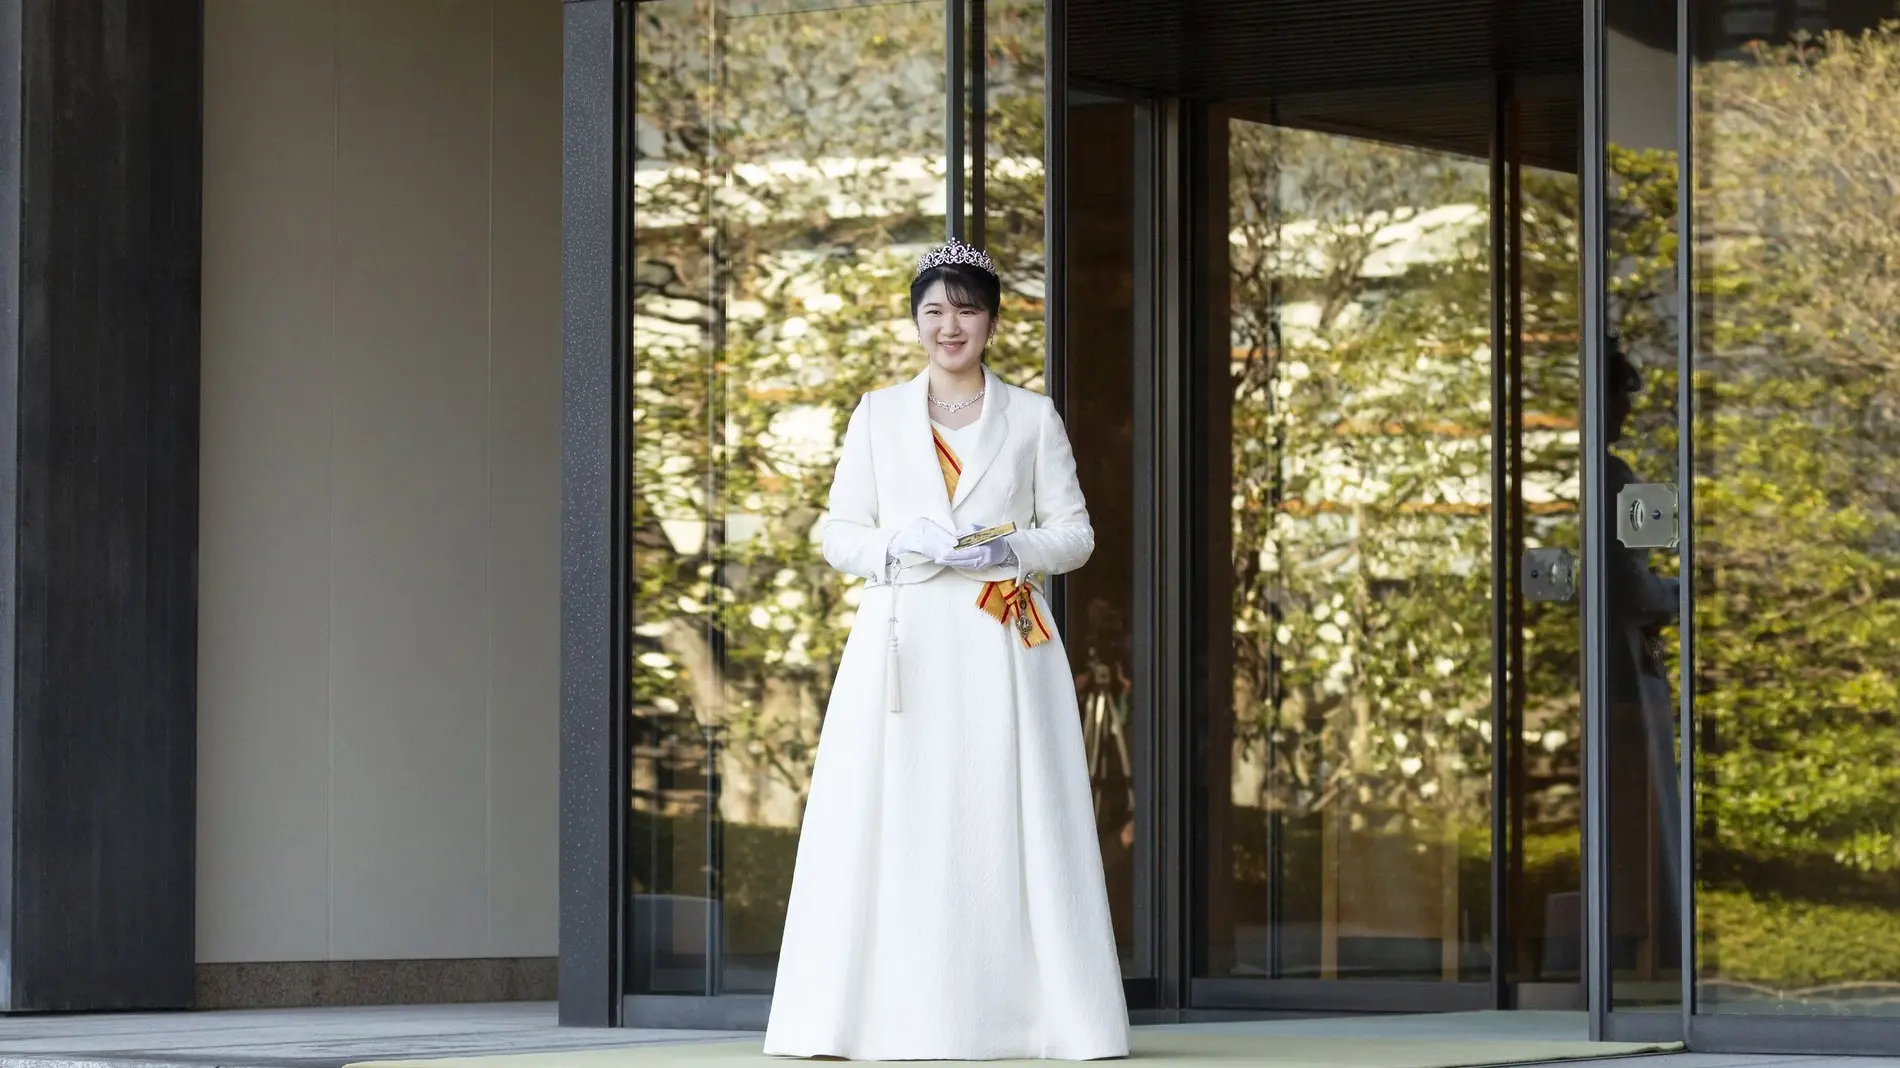 Zu sehen ist die japanische Prinzessin Aiko. Sie steht in einem weißen Kleid vor einer großen Glastür und lächelt in die Kamera. 